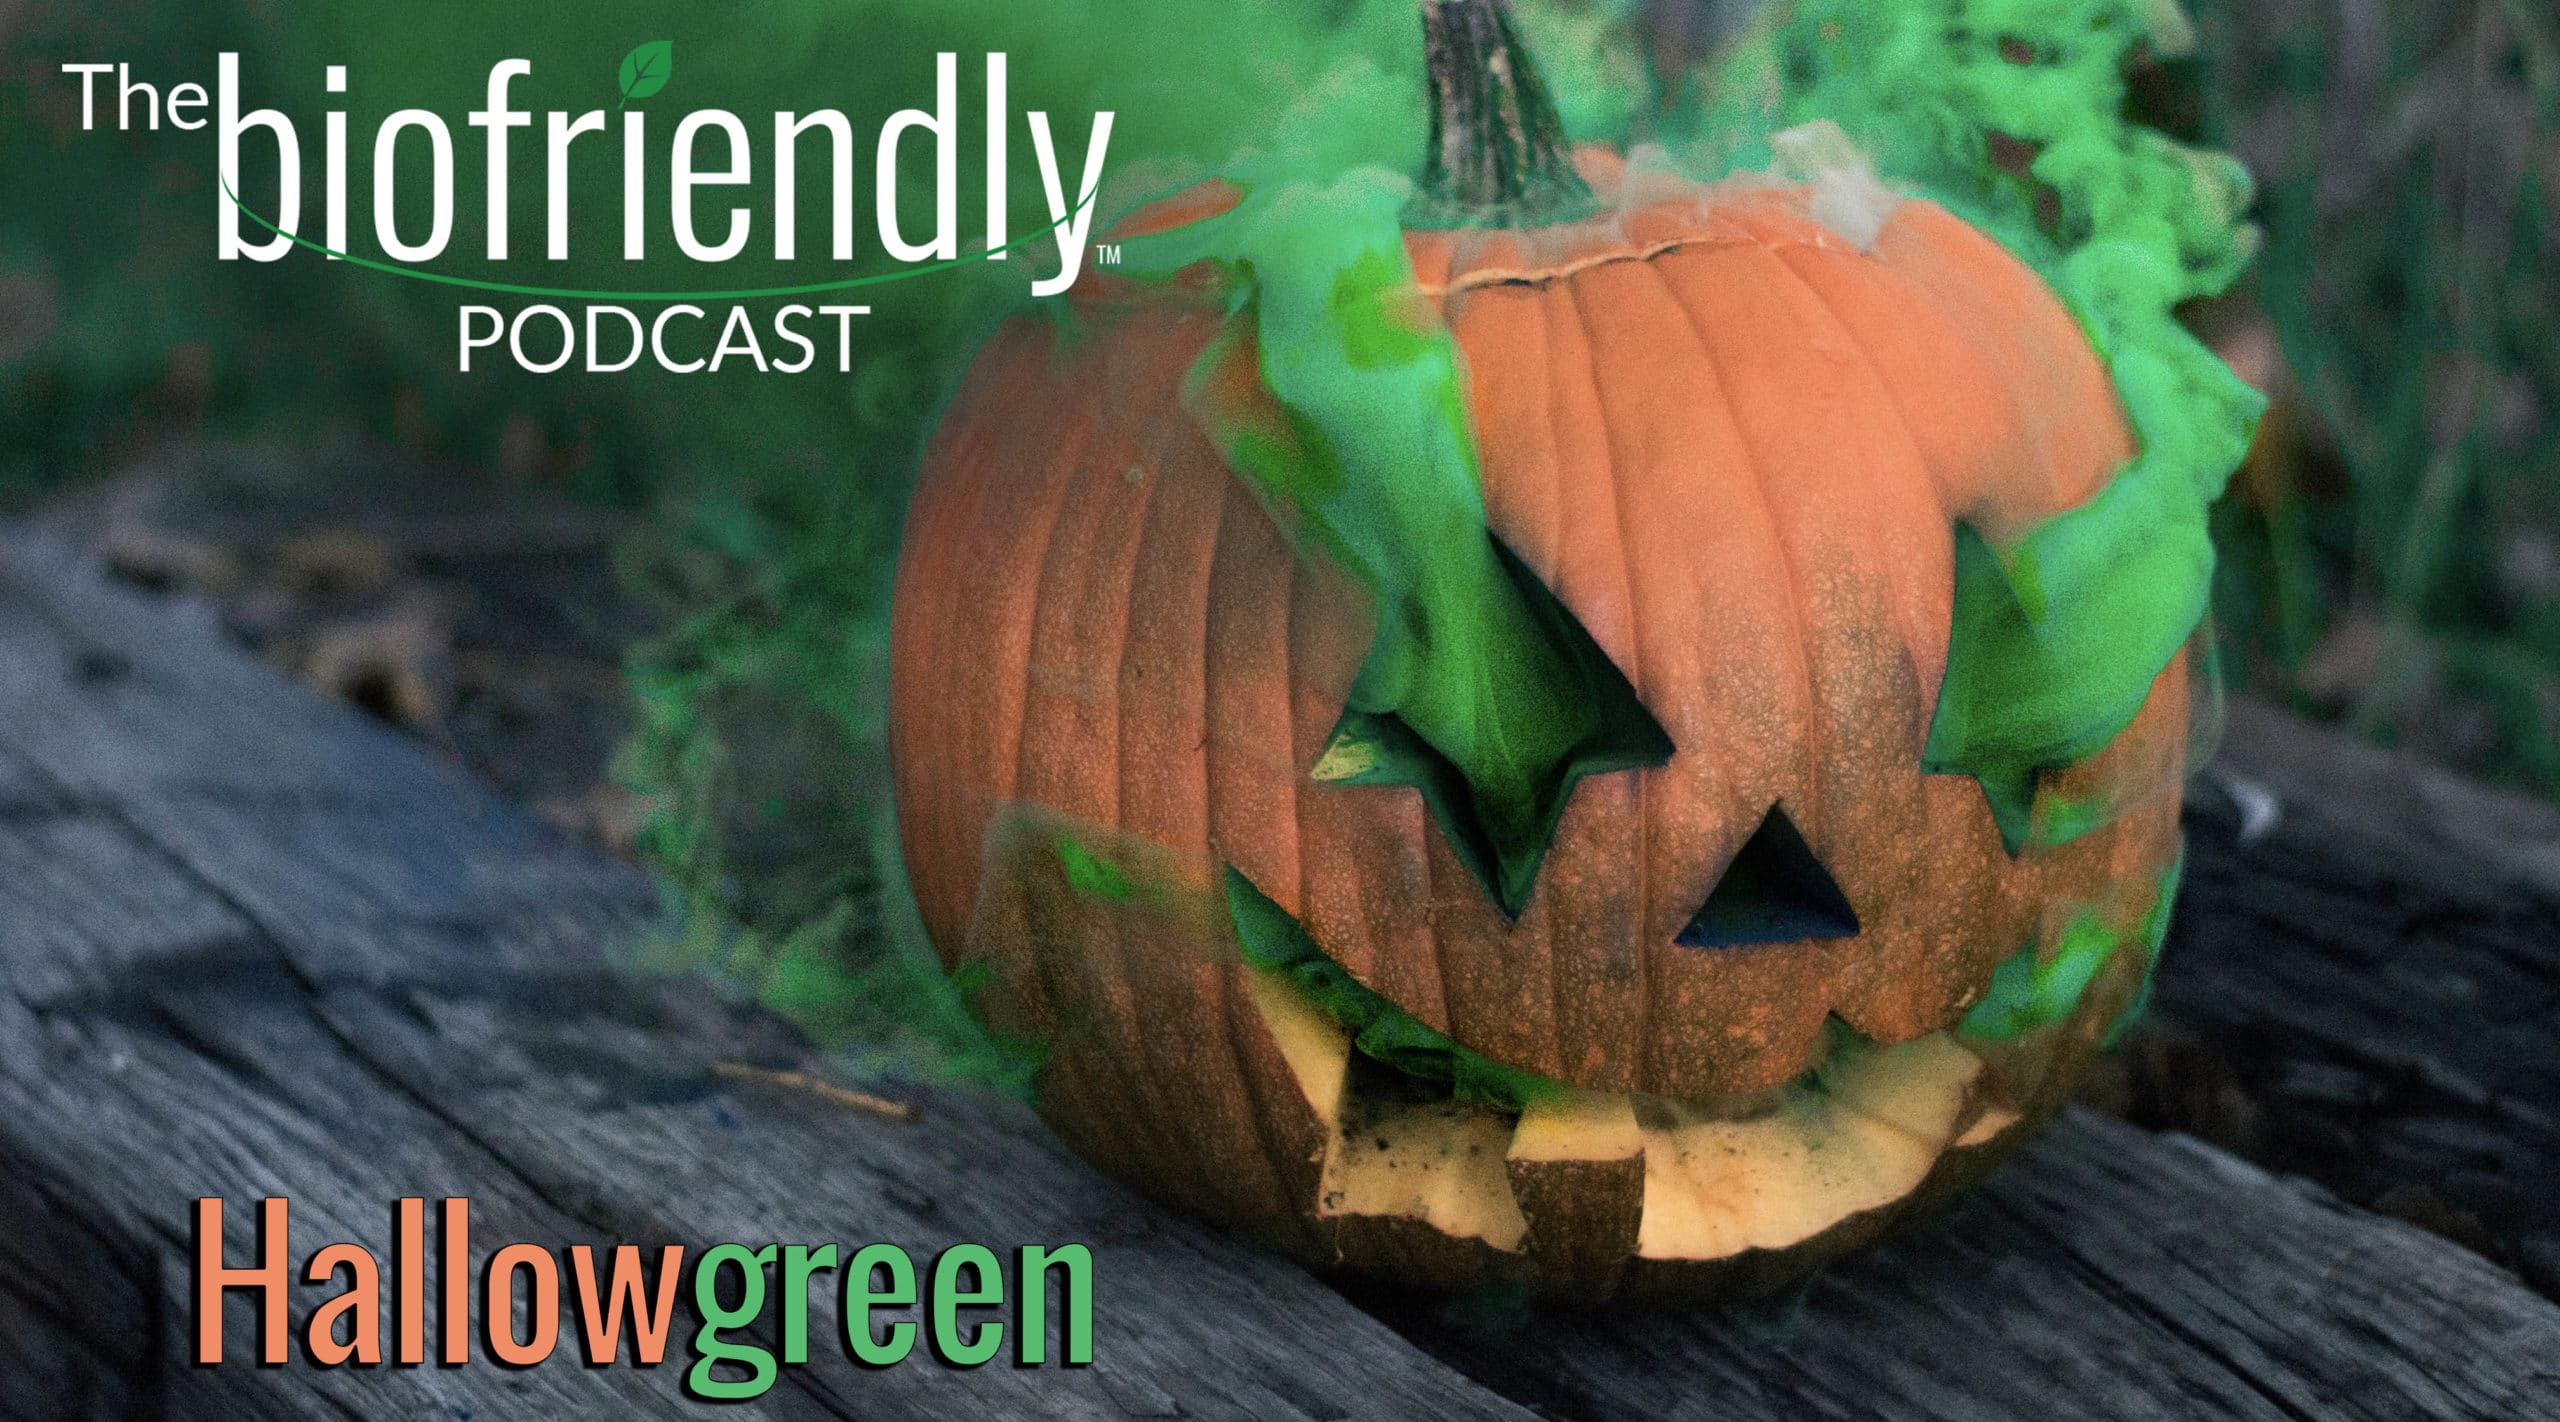 The Biofriendly Podcast - Episode 38 - Hallowgreen